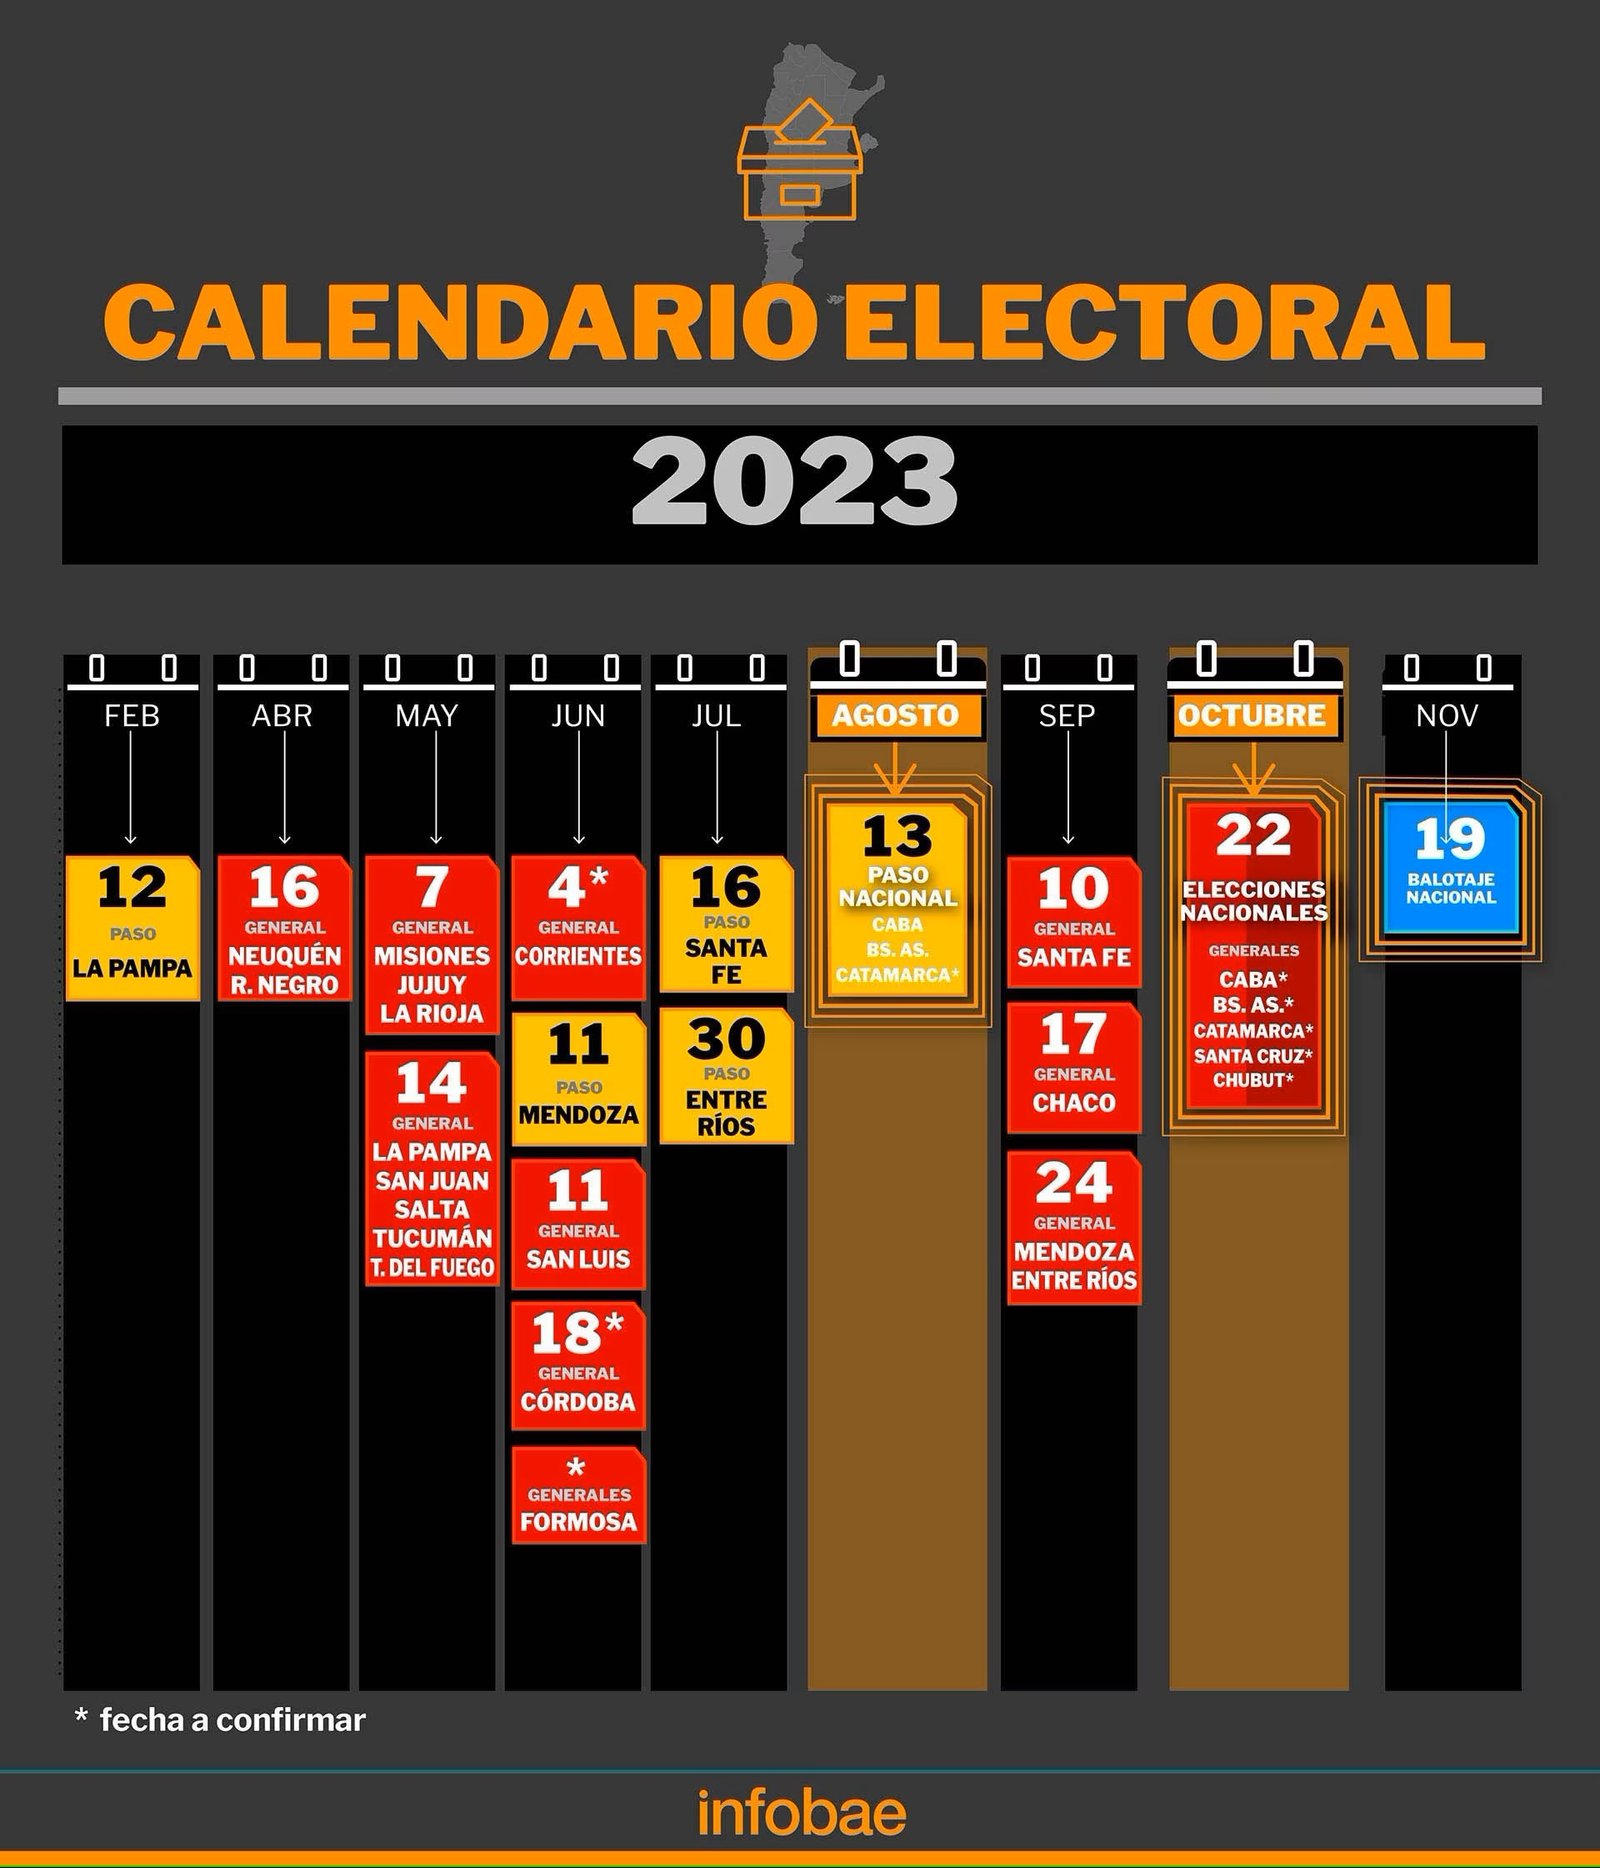 Calendario electoral 2023 las fechas más importantes de las elecciones